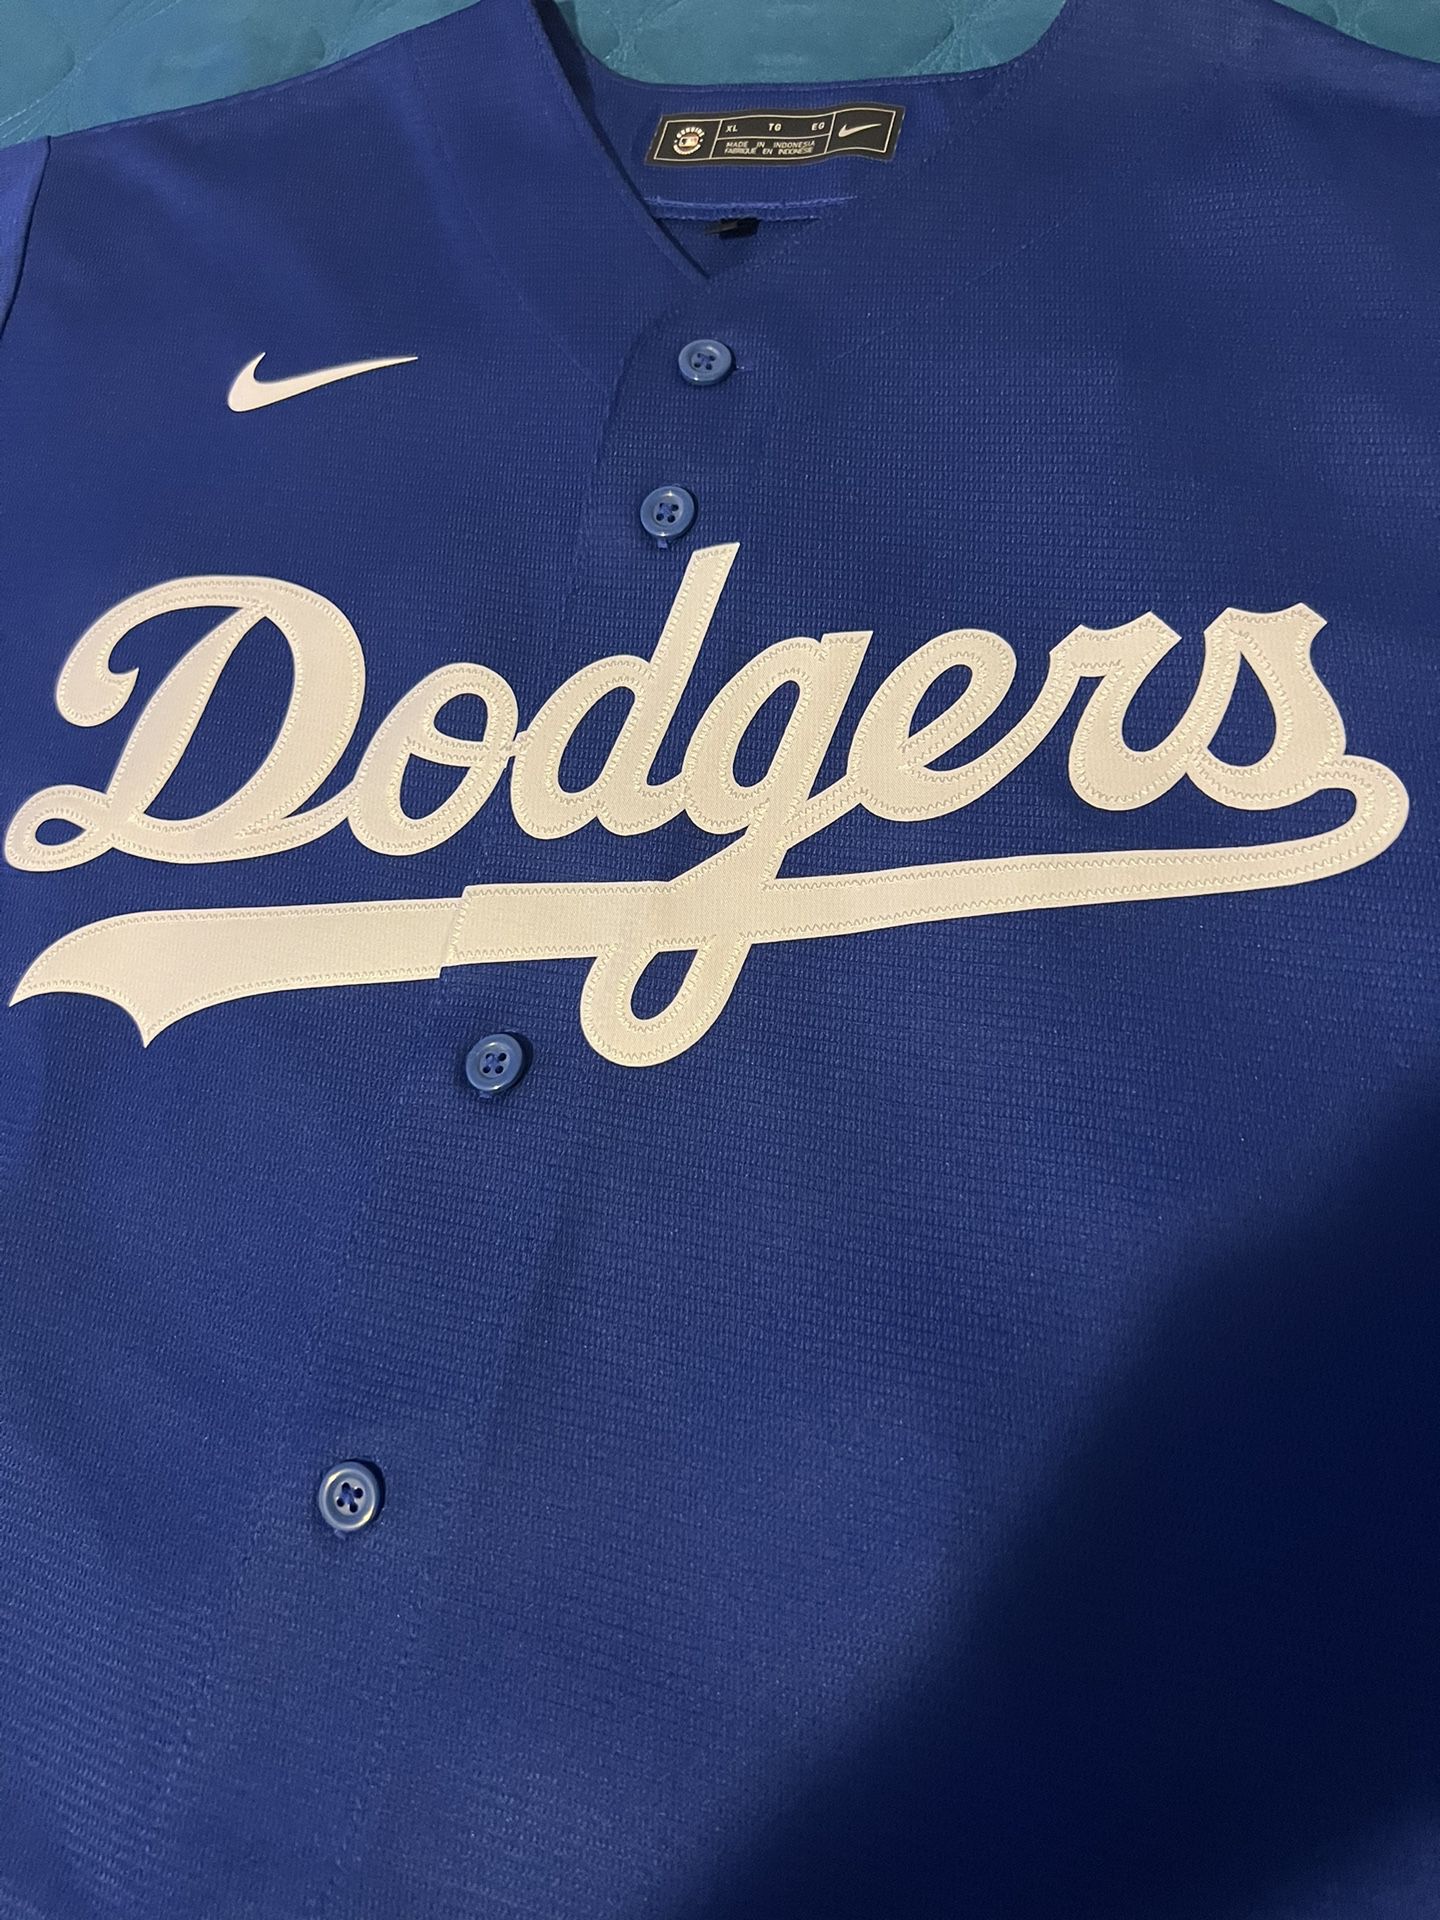 Mookie Betts • Los Angeles Dodgers • Nike Women • Replica Jersey